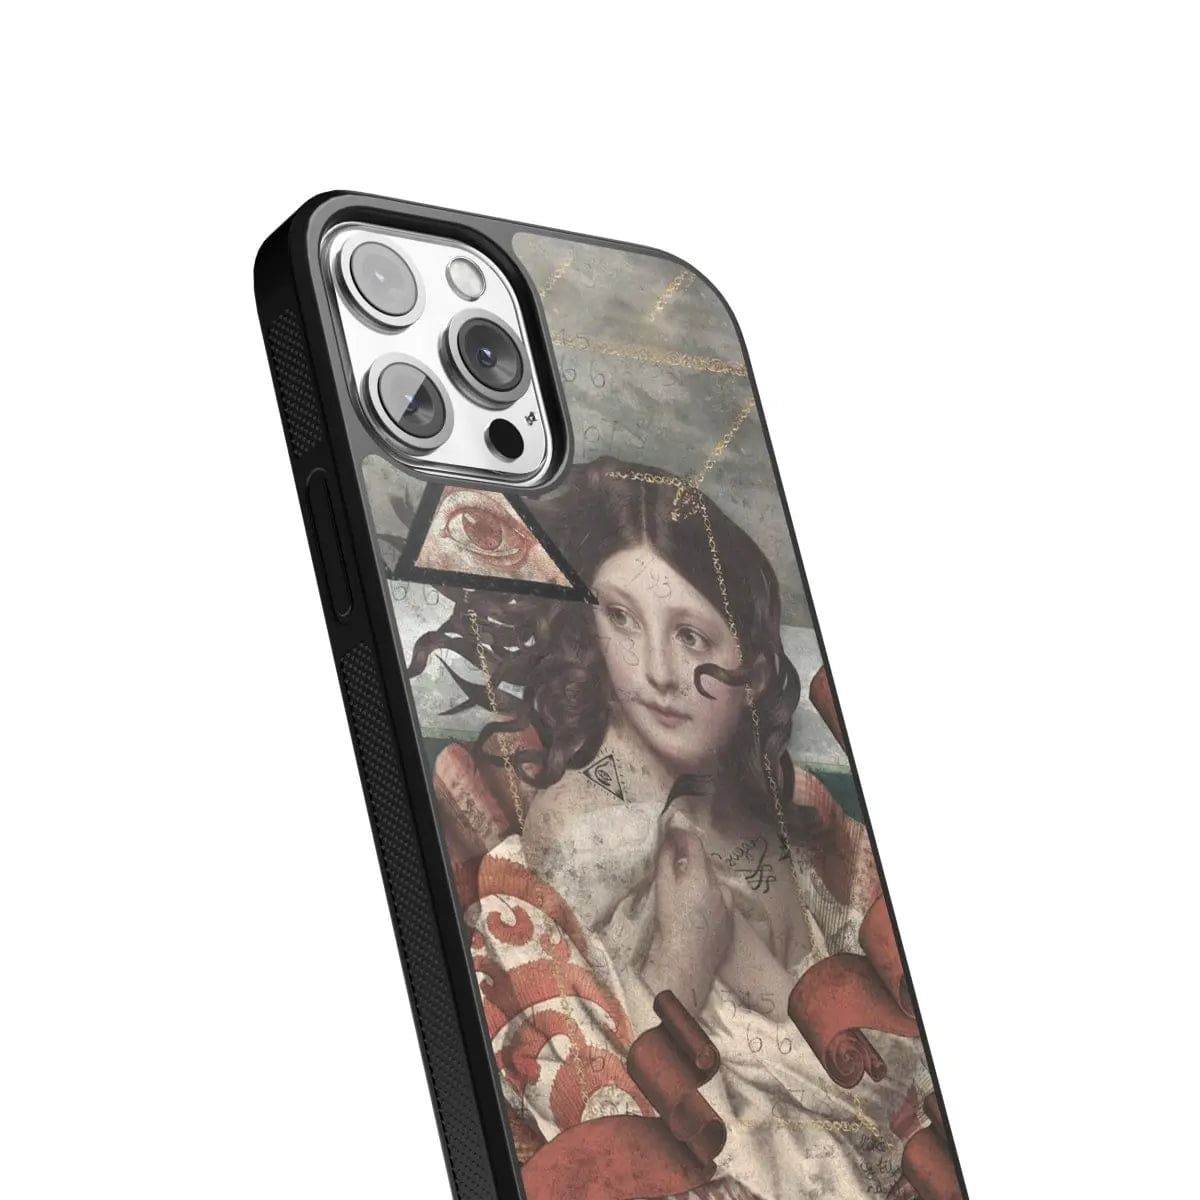 Phone case "Renaissance collage 2" - Artcase